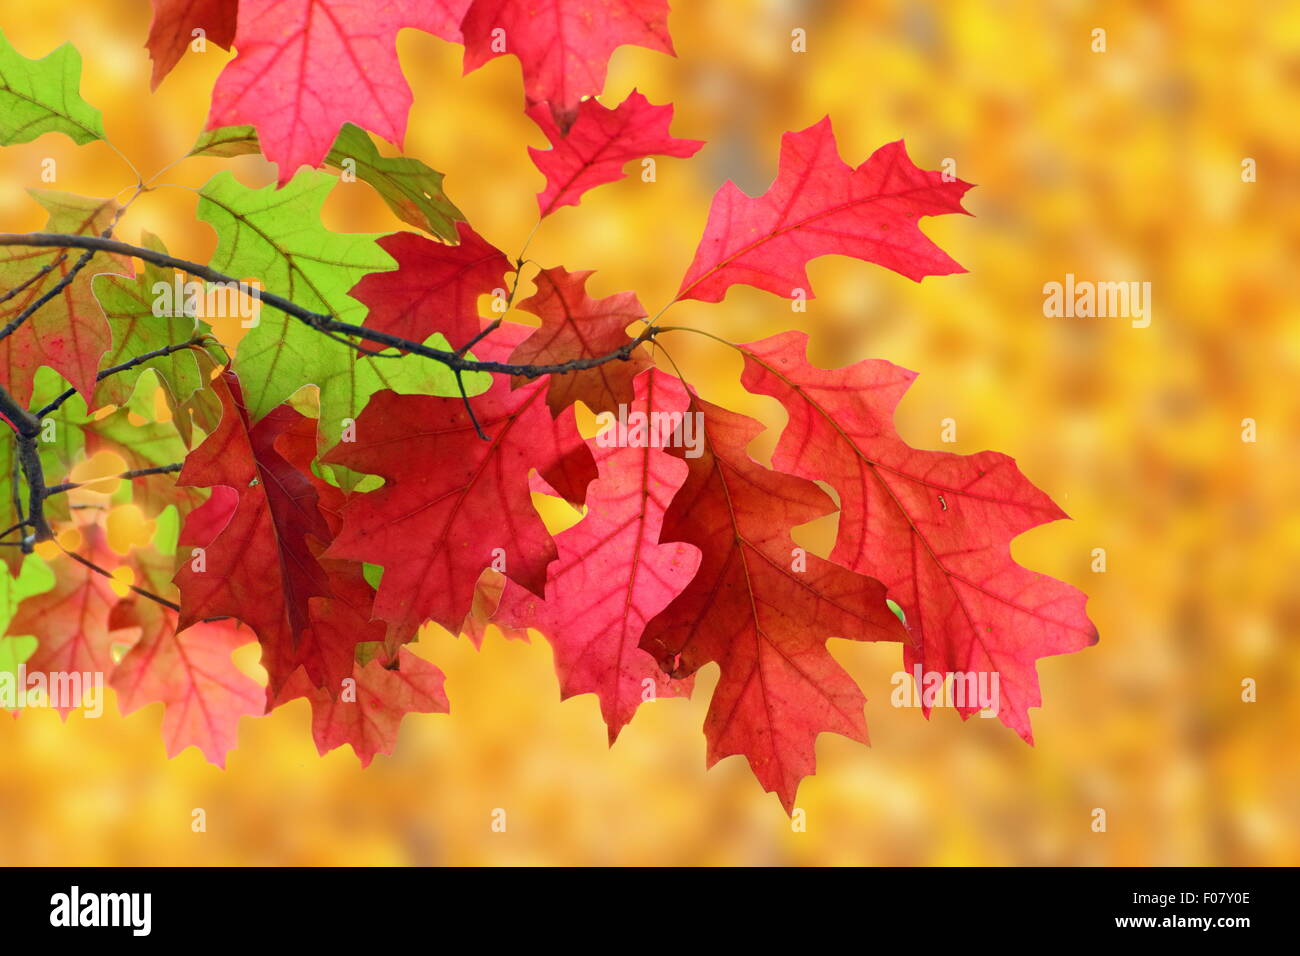 Bella sbiadito foglie rosse nella struttura ad albero su orange autunno sfondo della foresta Foto Stock